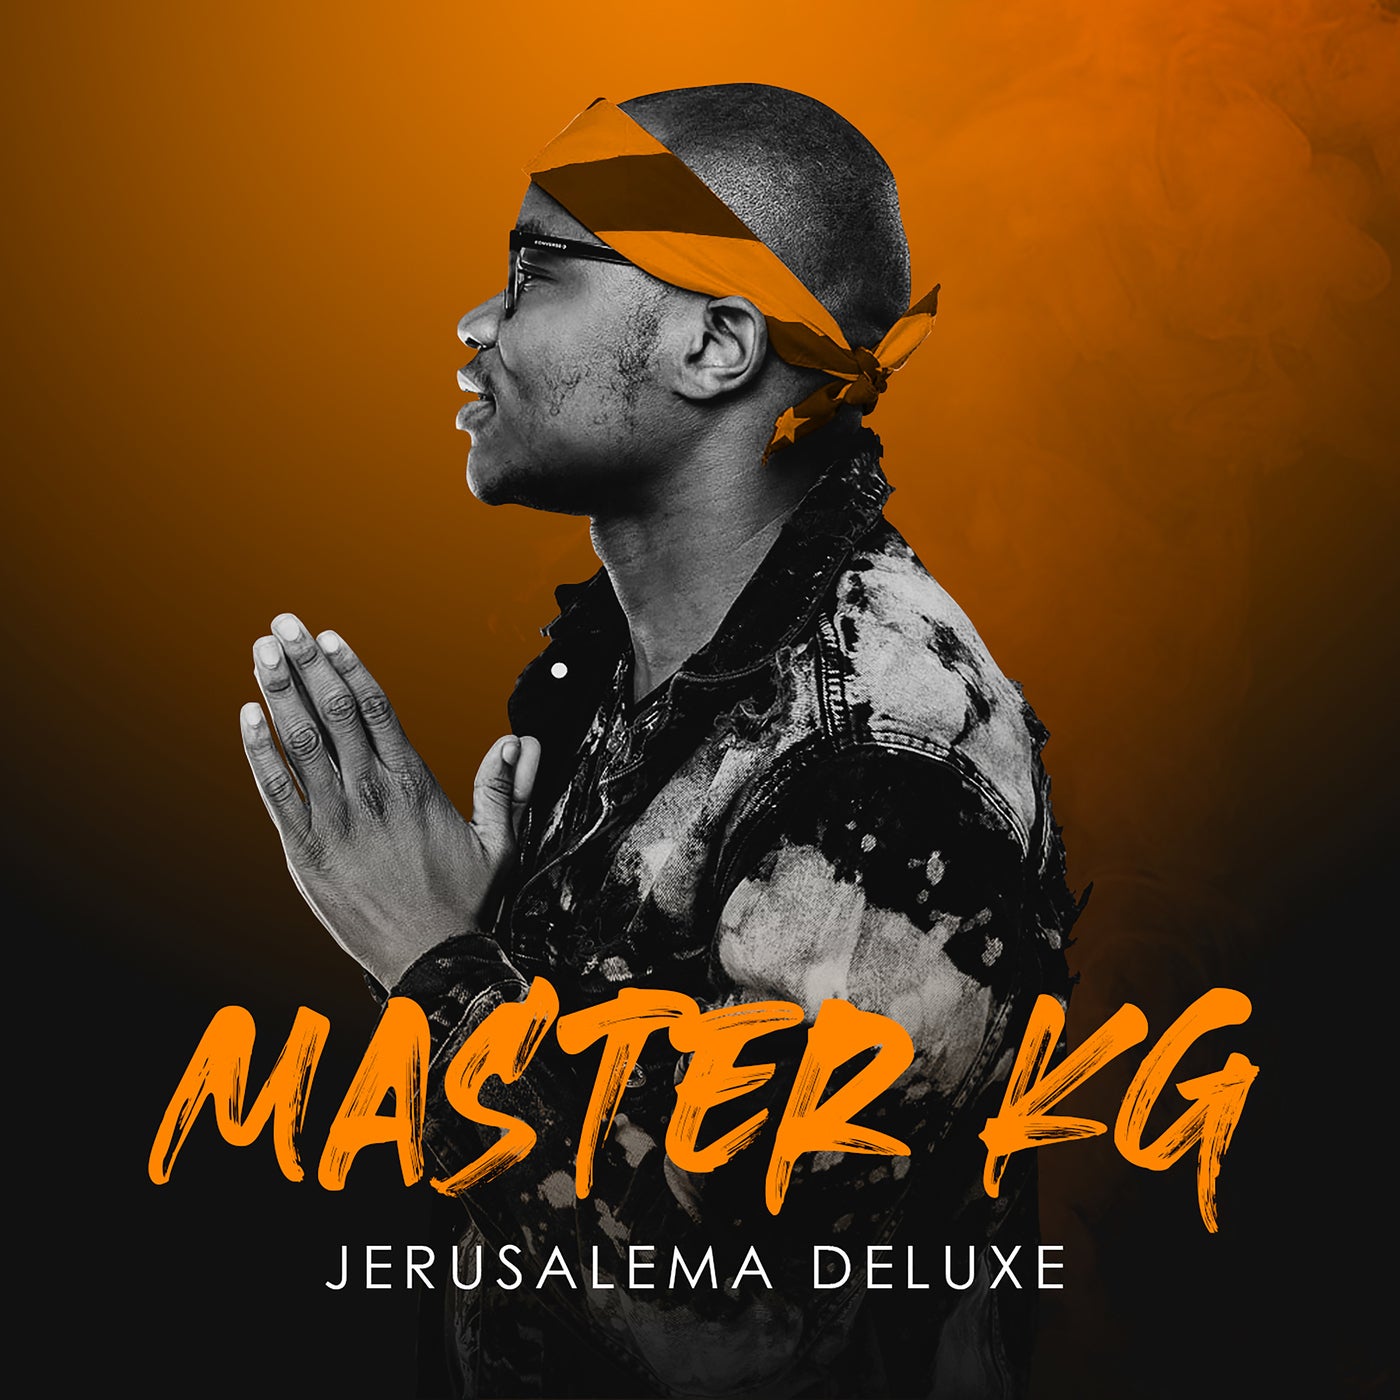 jerusalema-deluxe-by-master-kg-nomcebo-zikode-nokwazi-dj-tira